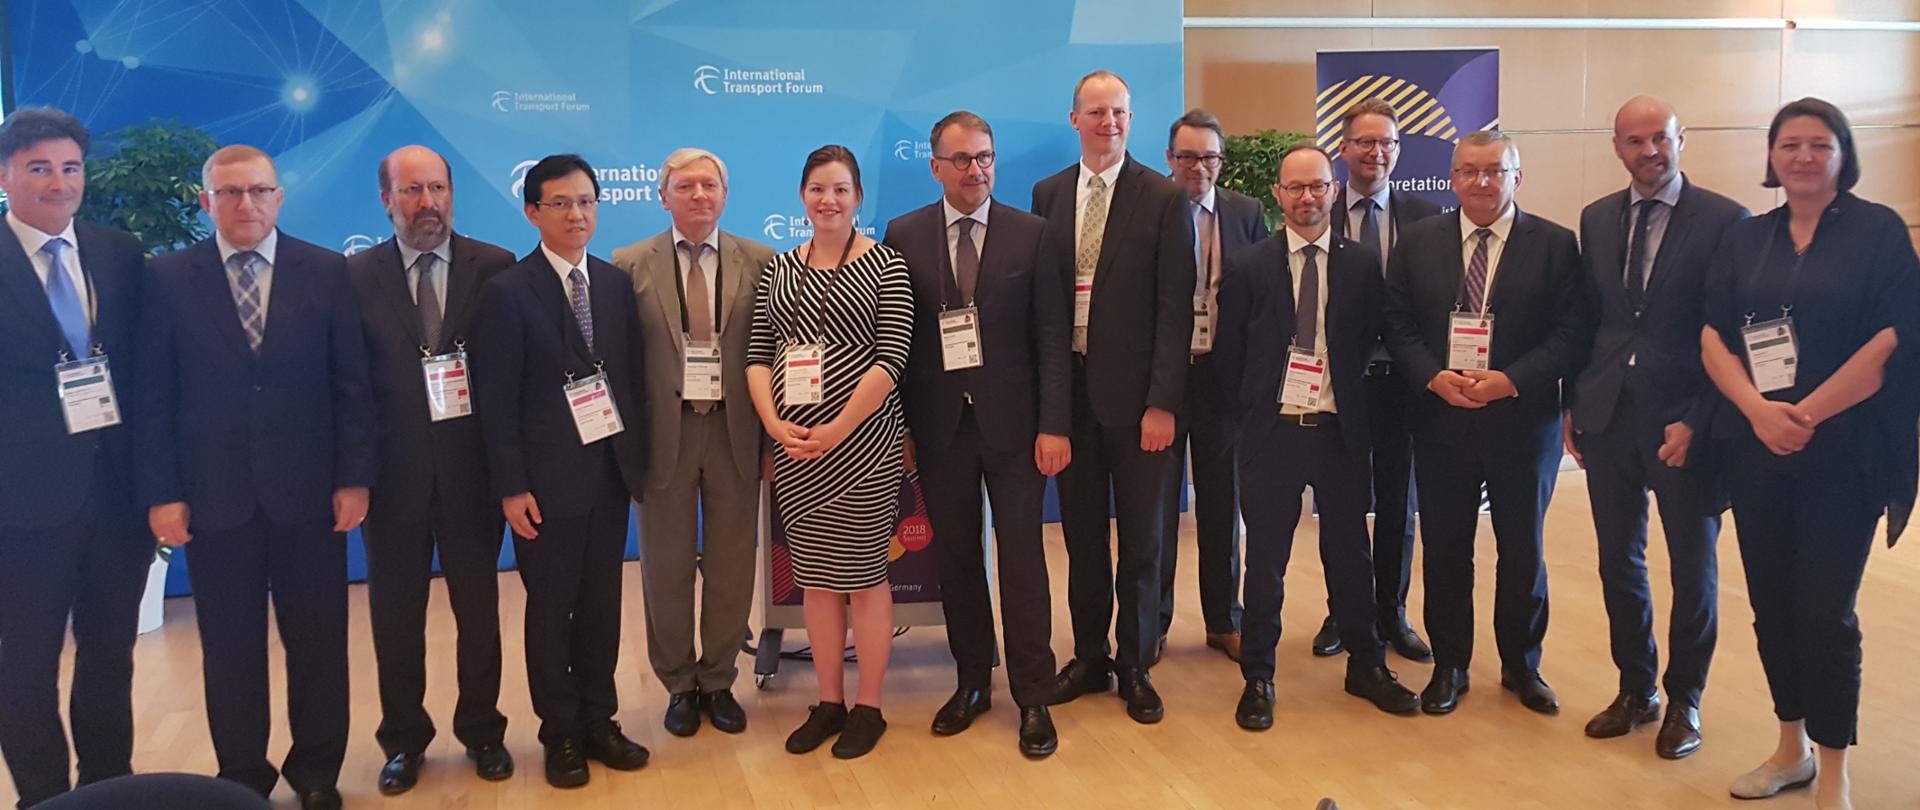 Uczestnicy Szczytu Ministrów Międzynarodowego Forum Transportu 2018 w Lipsku.
